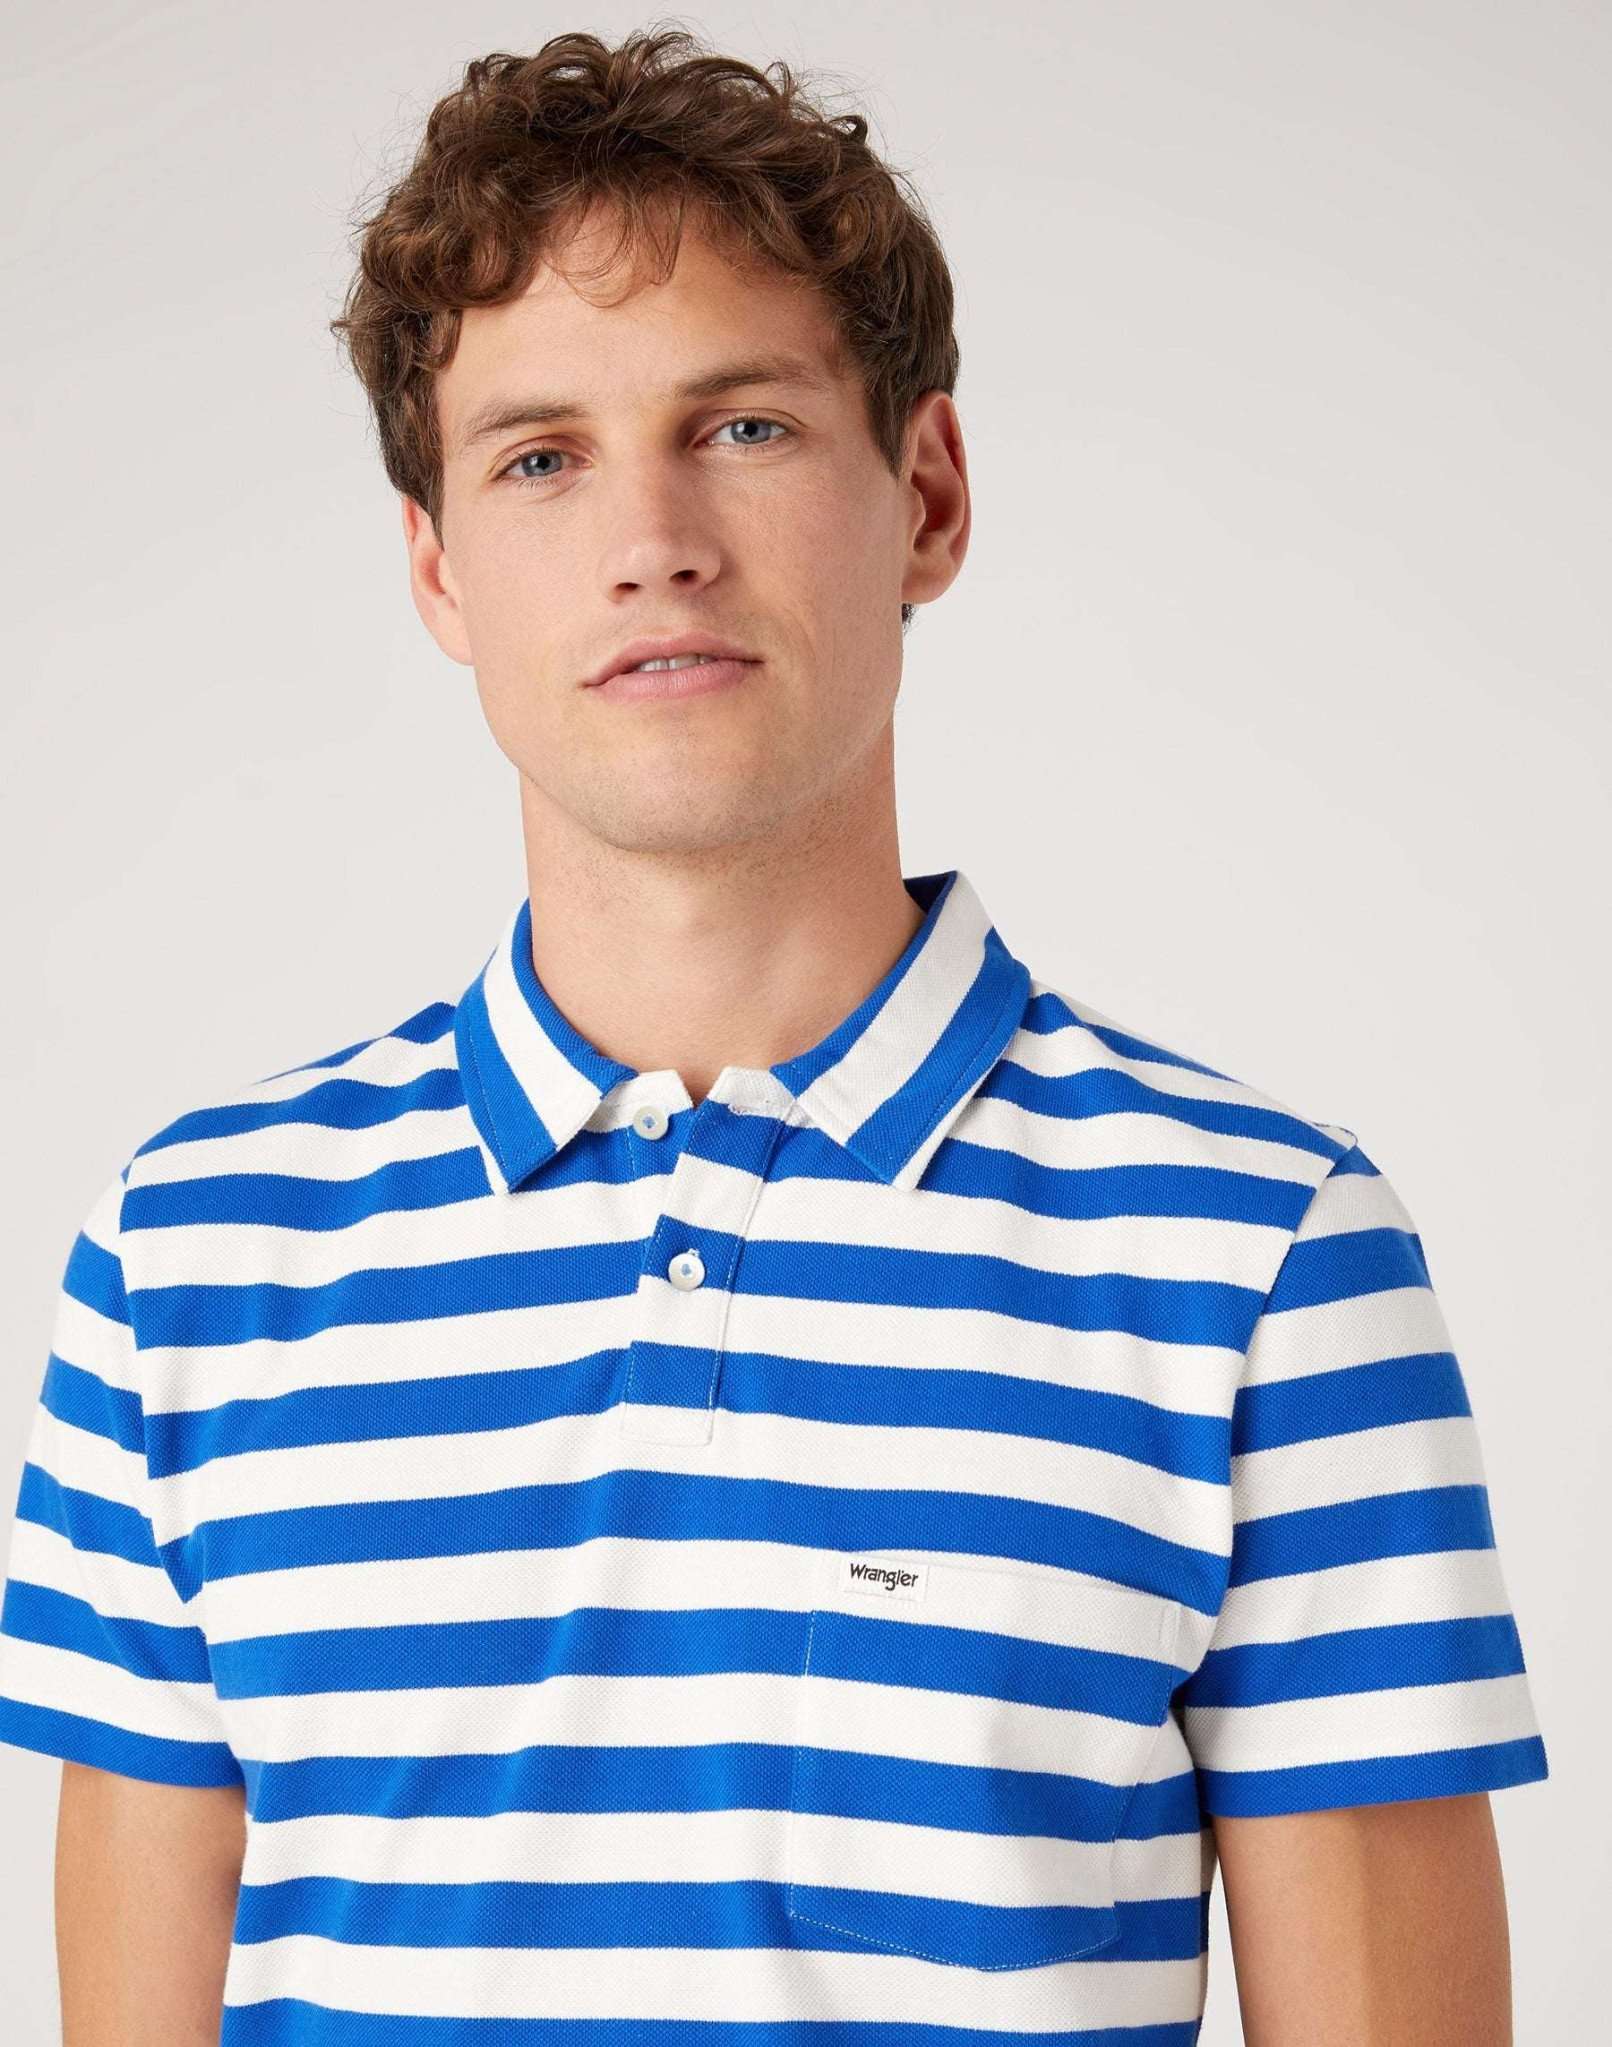 Stripe Polo Shirt in Wrangler Blue Polos Wrangler   